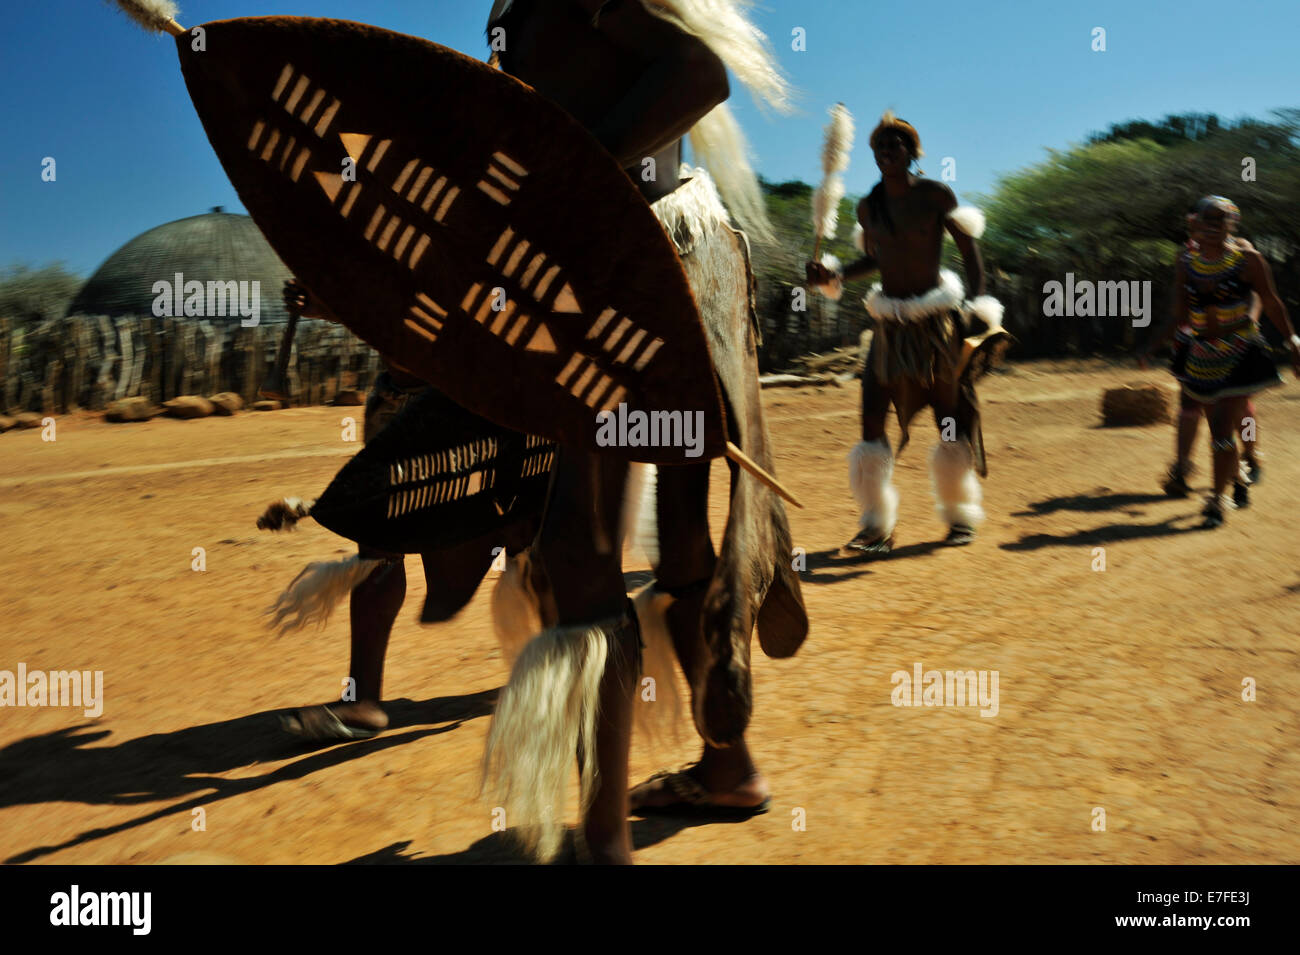 Personnes, culture, hommes adultes Zulu, tenue traditionnelle de cérémonie, boucliers marchant avec la jeune fille, village à thème, Shakaland, KwaZulu-Natal, Afrique du Sud Banque D'Images